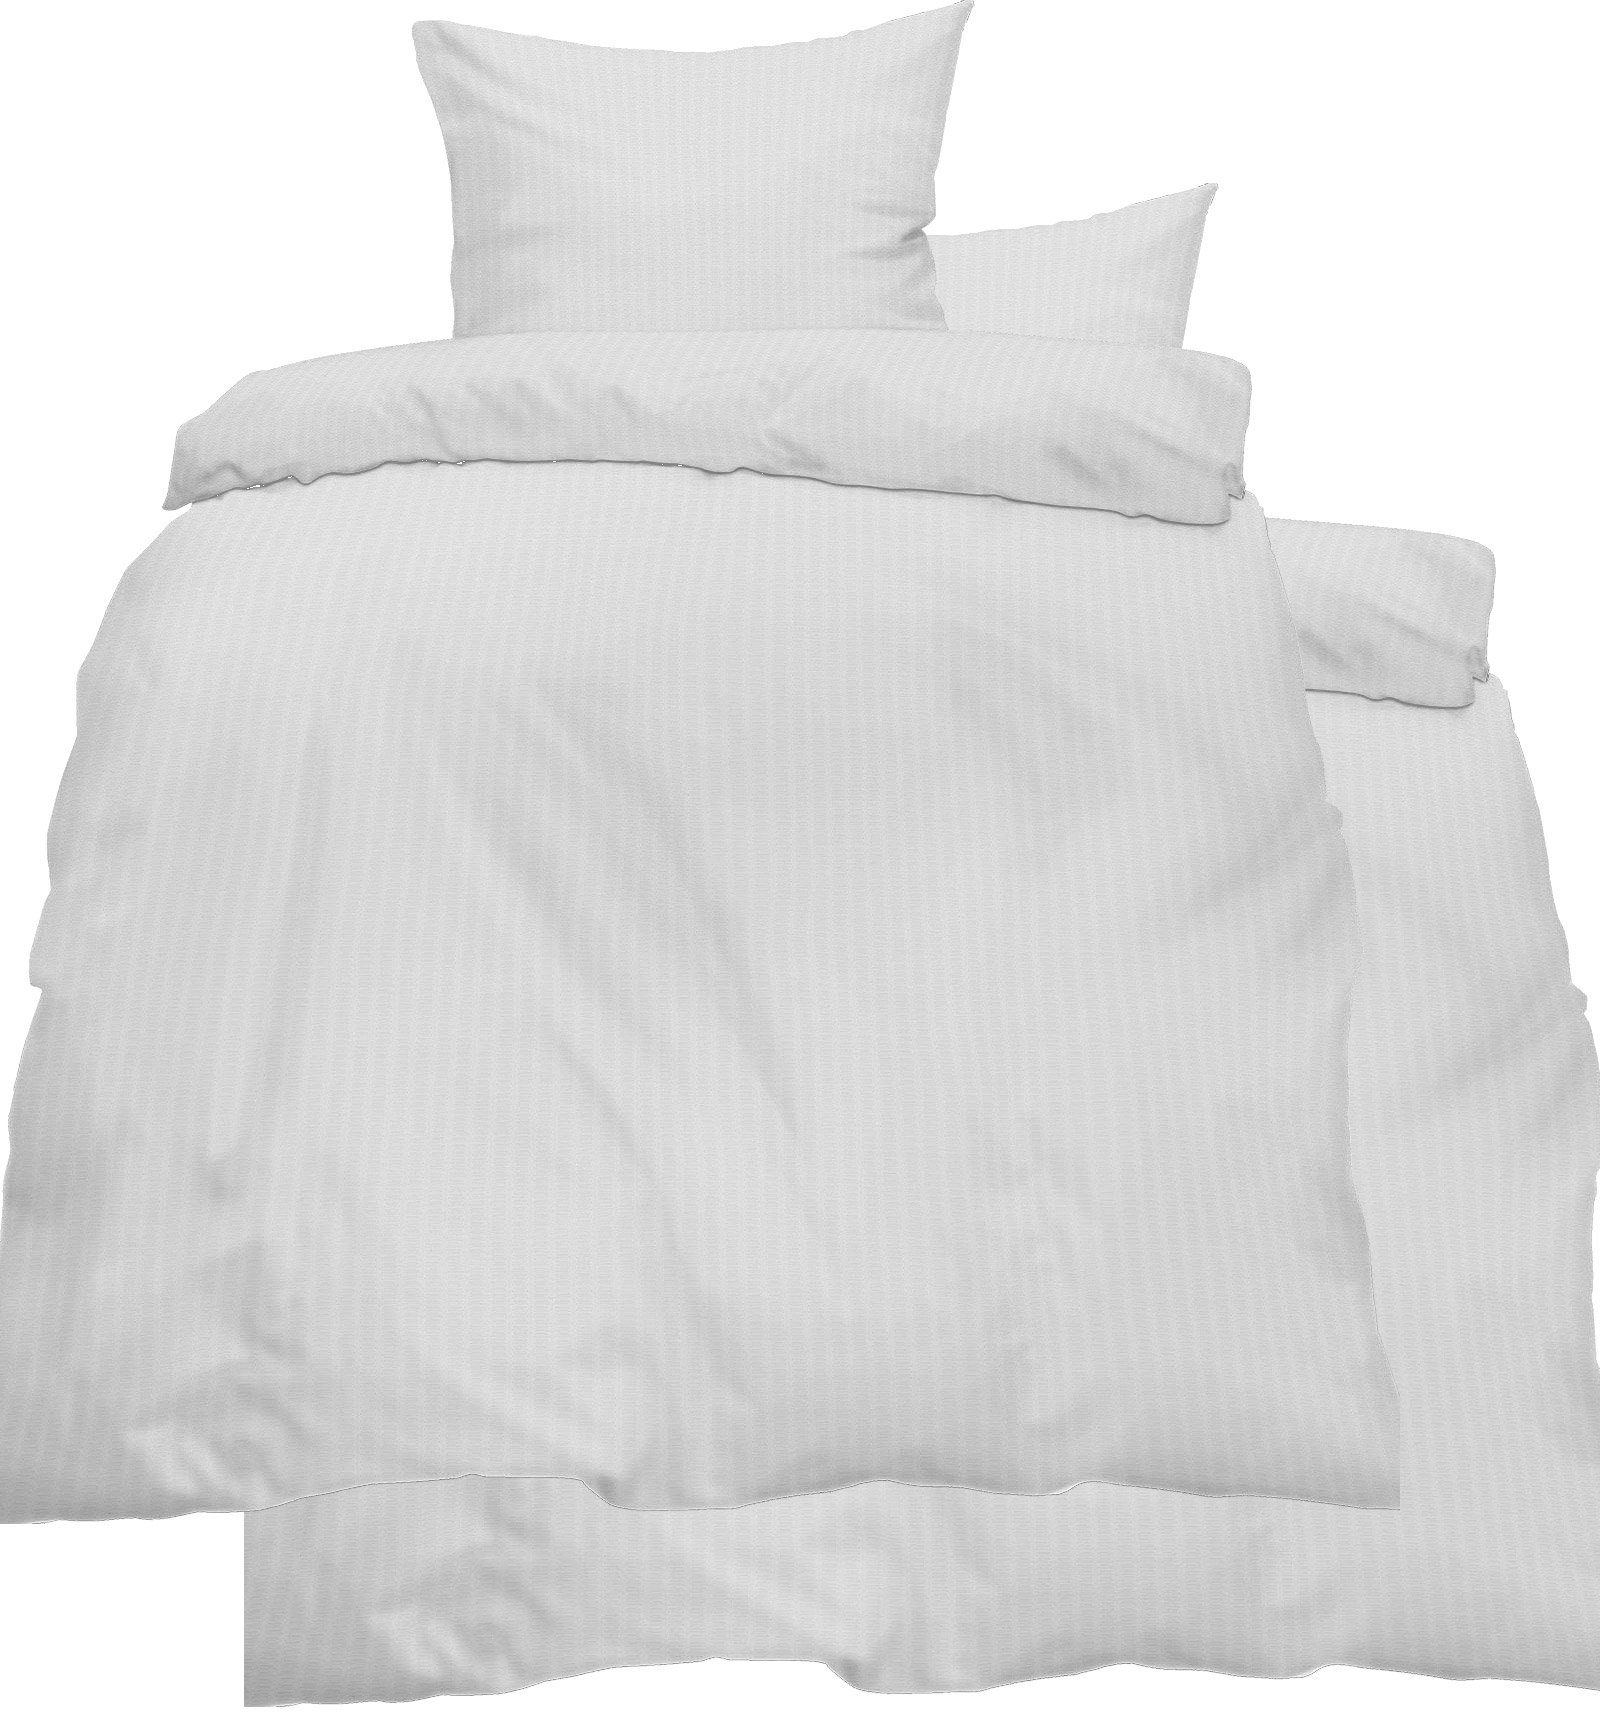 Bettwäsche Baumwoll Seersucker Bettwäsche 135x200 +80x80 cm, weiß, uni einfarbig, bügelfrei, 100% Baumwolle, KH-Haushaltshandel, Seersucker